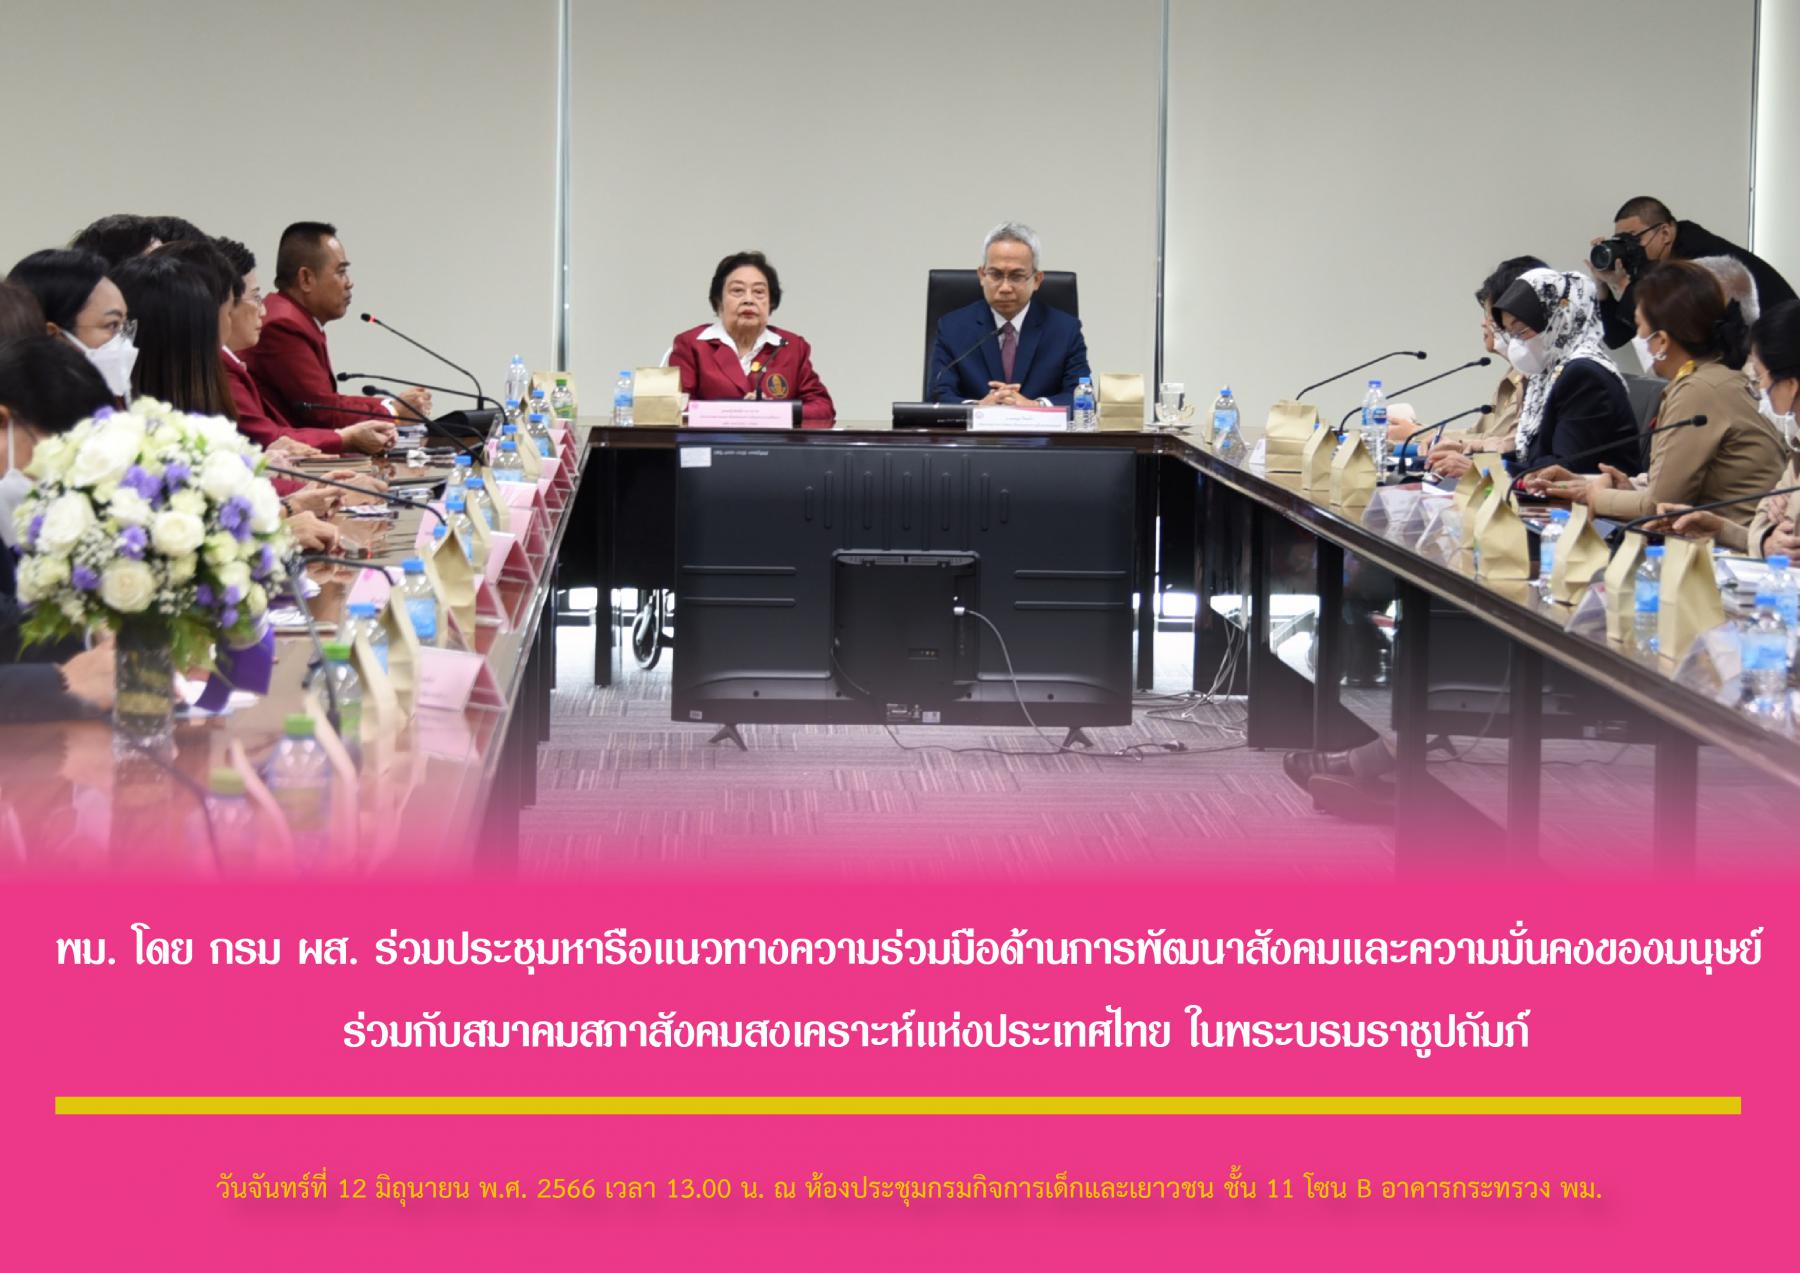 พม. โดย กรม ผส. ร่วมประชุมหารือแนวทางความร่วมมือด้านการพัฒนาสังคมและความมั่นคงของมนุษย์ ร่วมกับสมาคมสภาสังคมสงเคราะห์แห่งประเทศไทย ในพระบรมราชูปถัมภ์